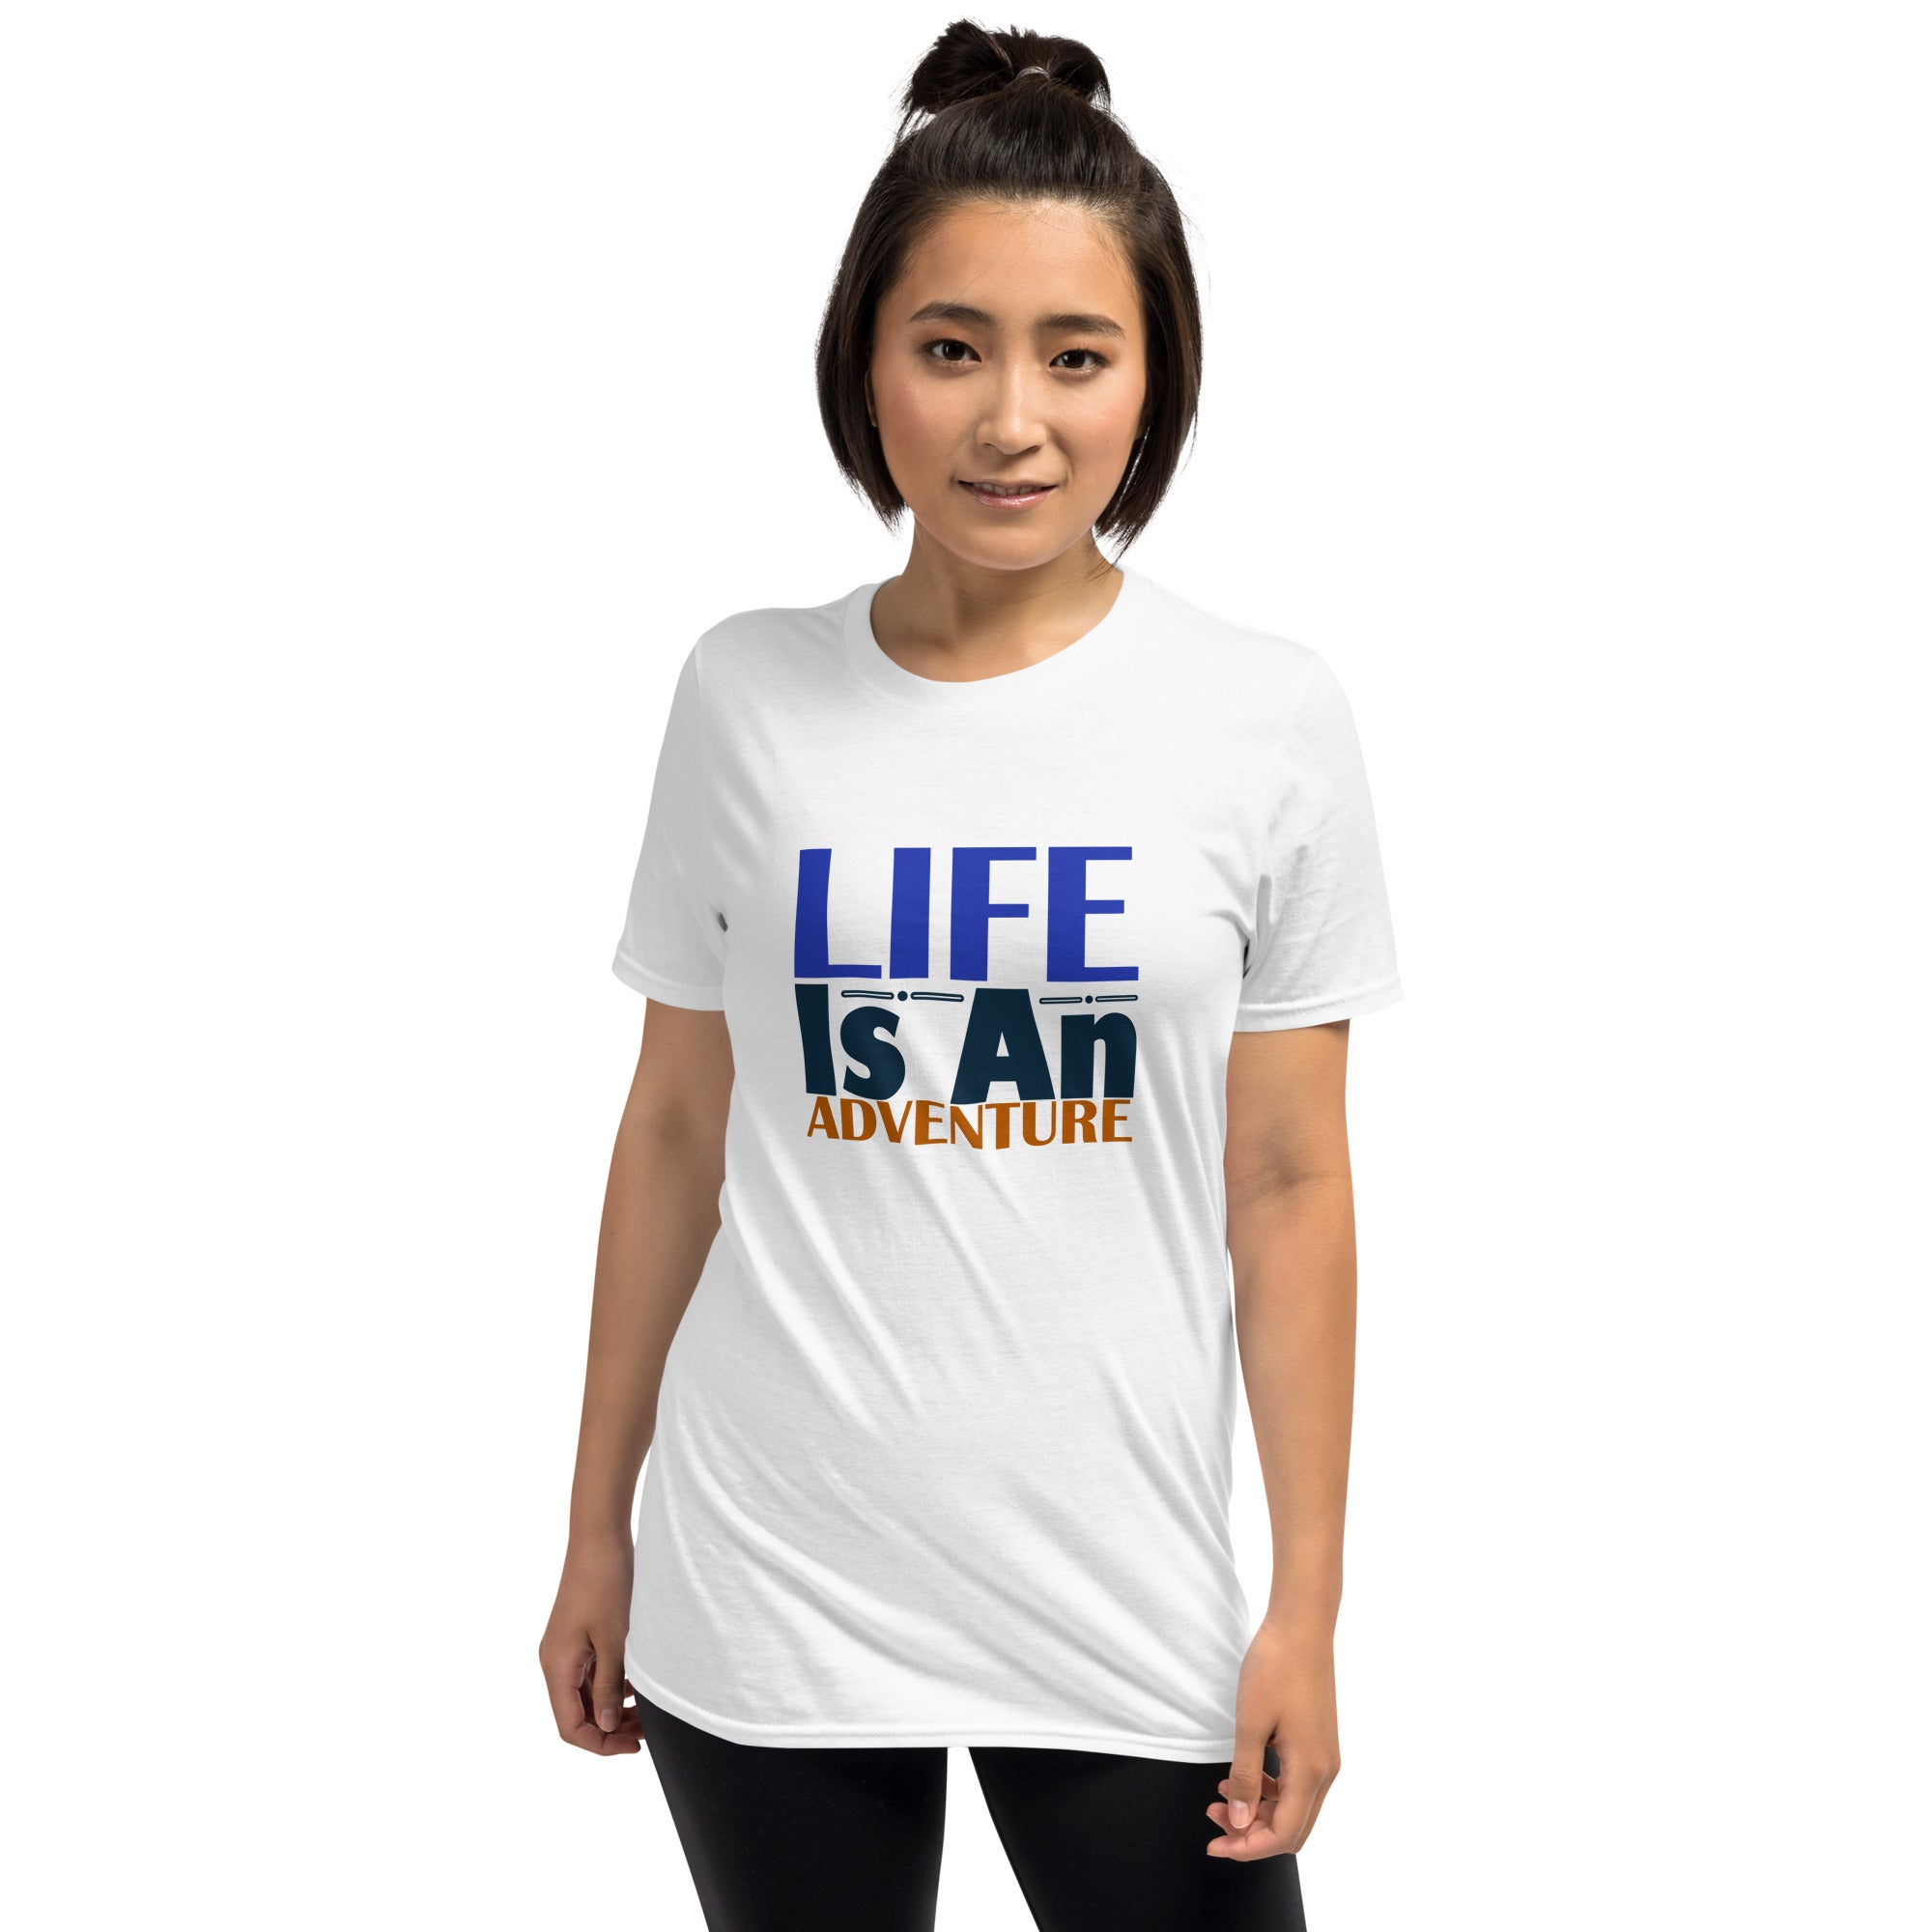 Life Is An Adventure - Short-Sleeve Unisex T-Shirt